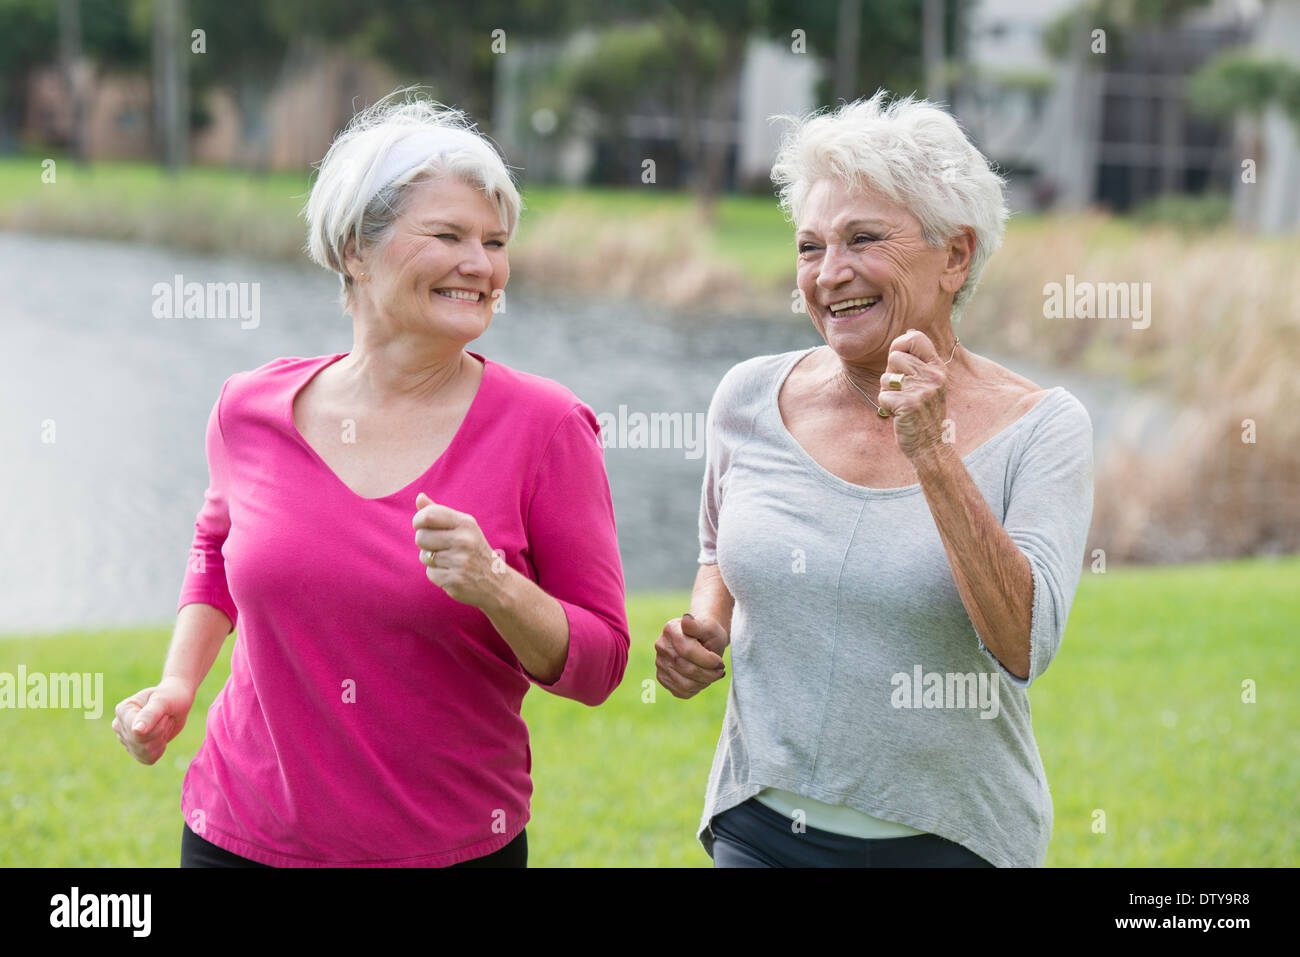 Senior Caucasian women jogging in park Stock Photo